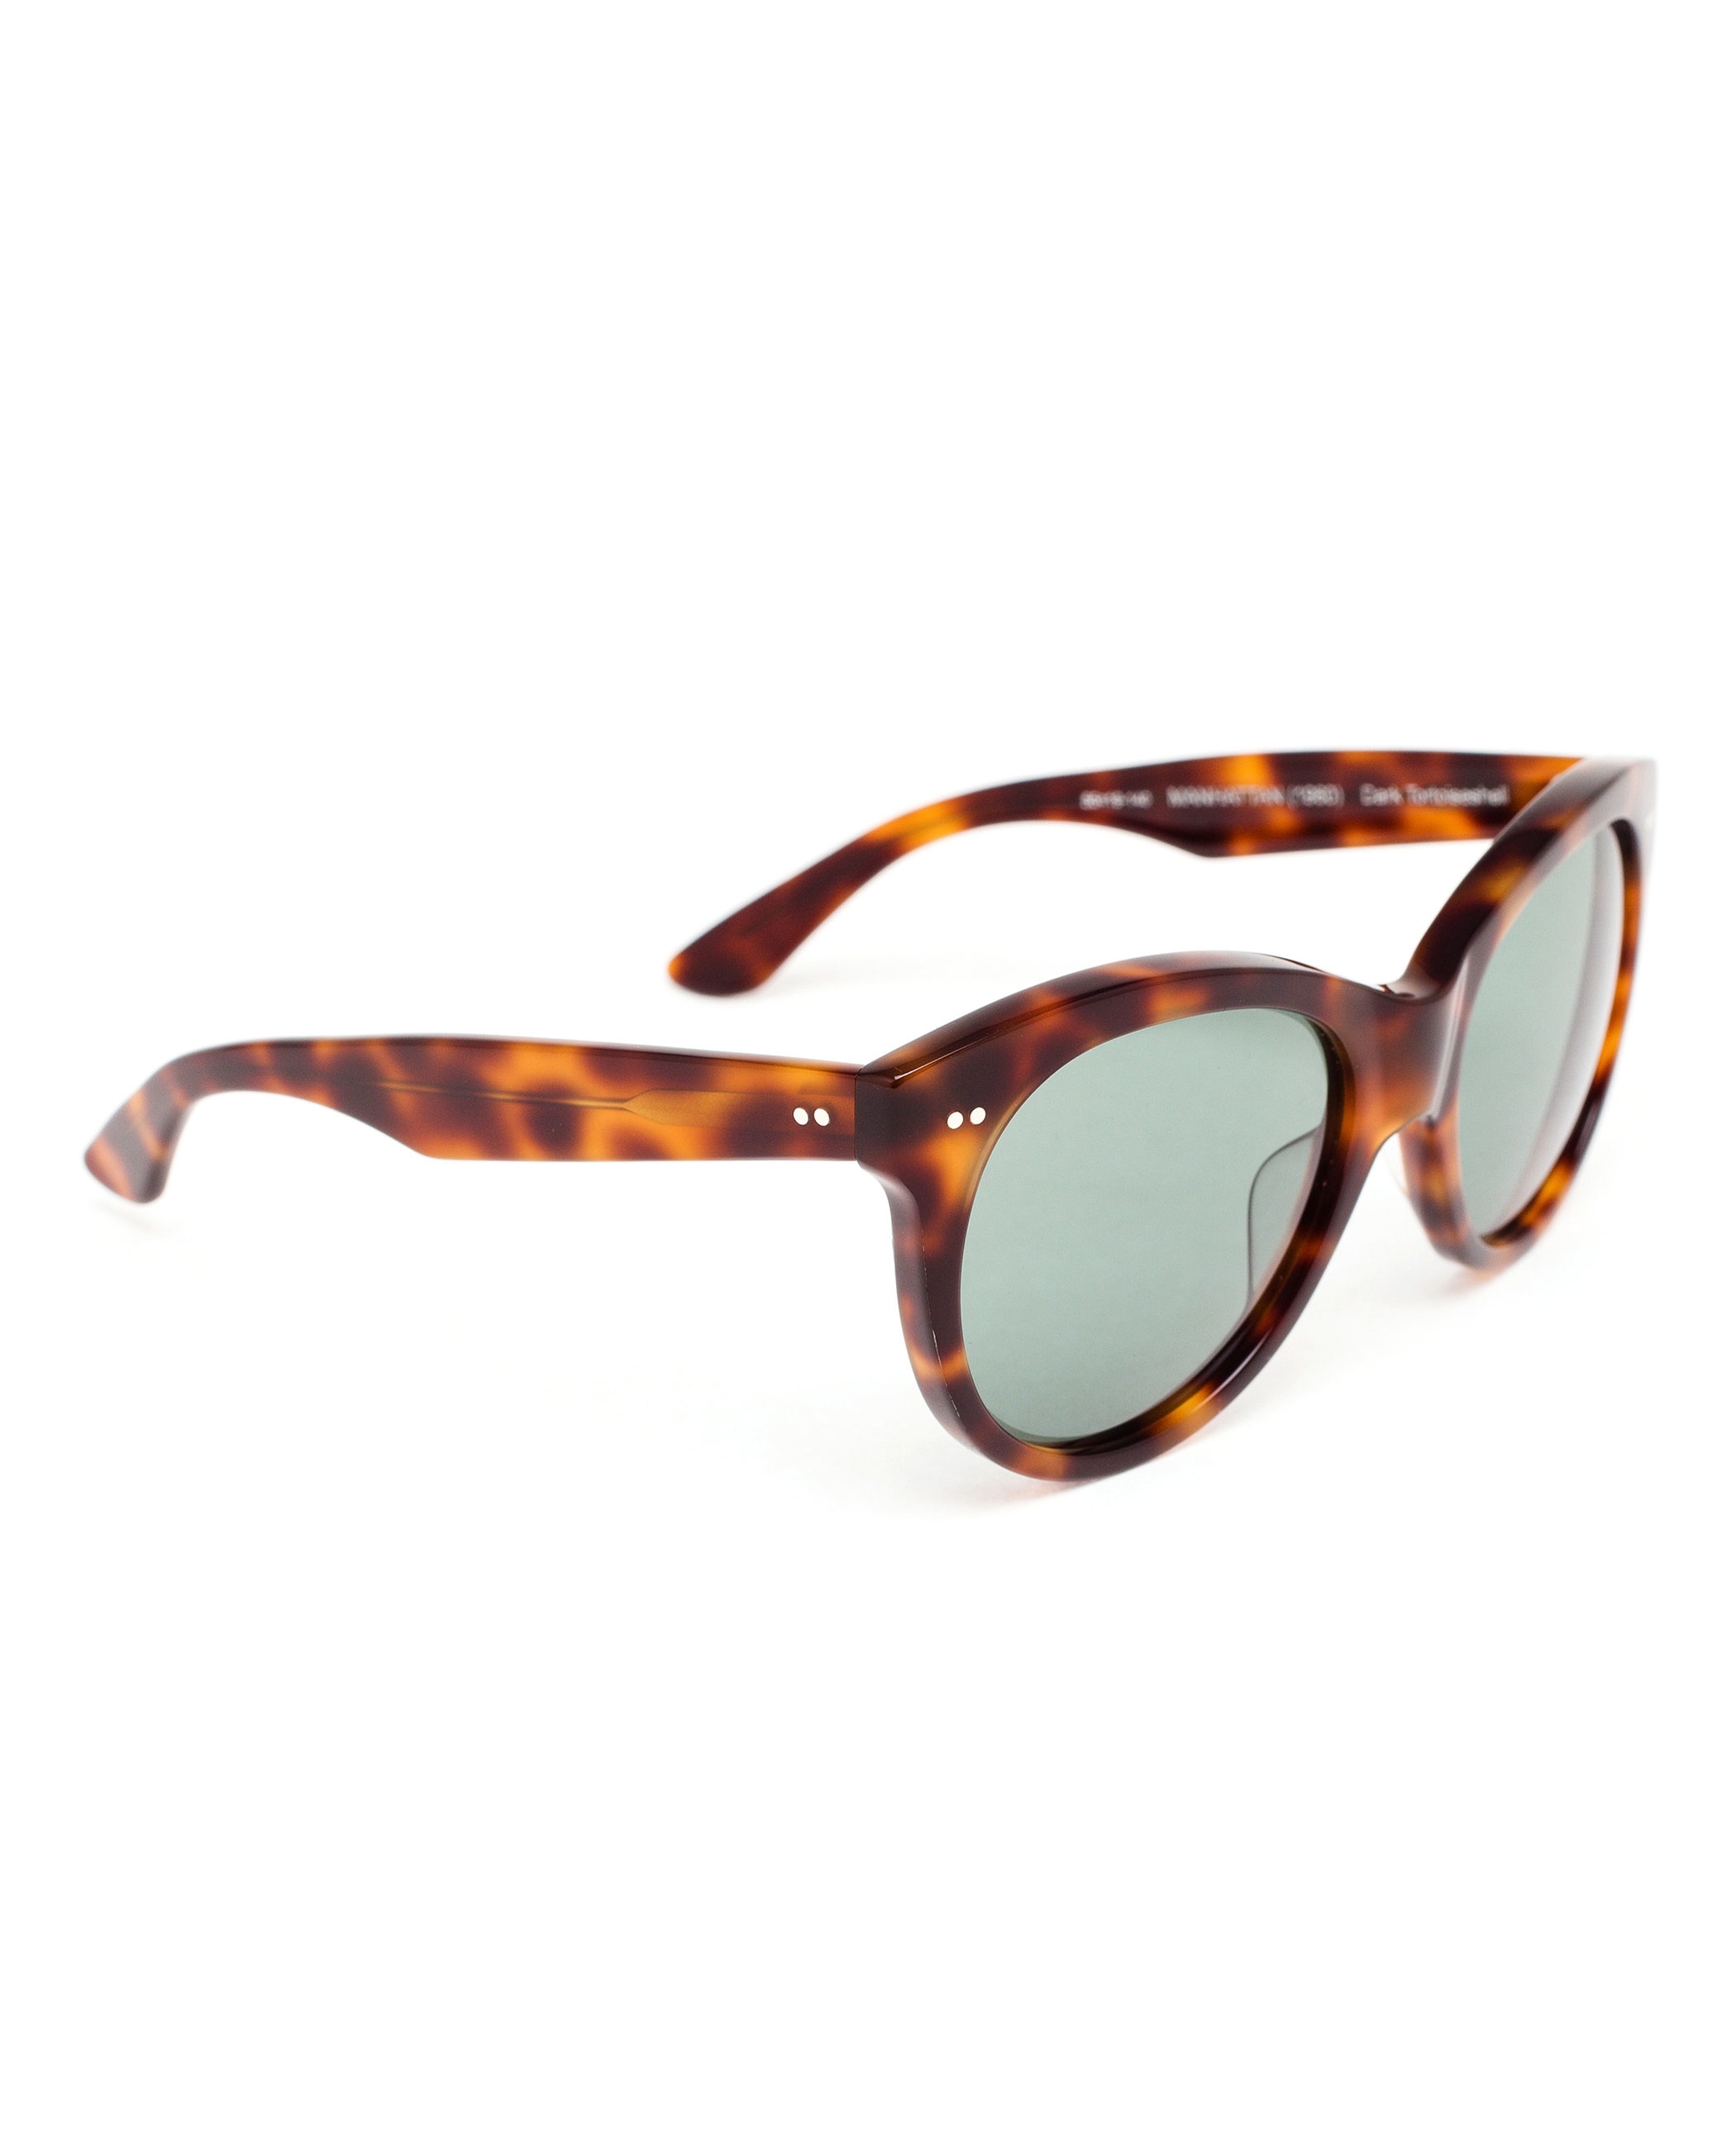 Oliver goldsmith Manhattan Sunglasses in Brown | Lyst